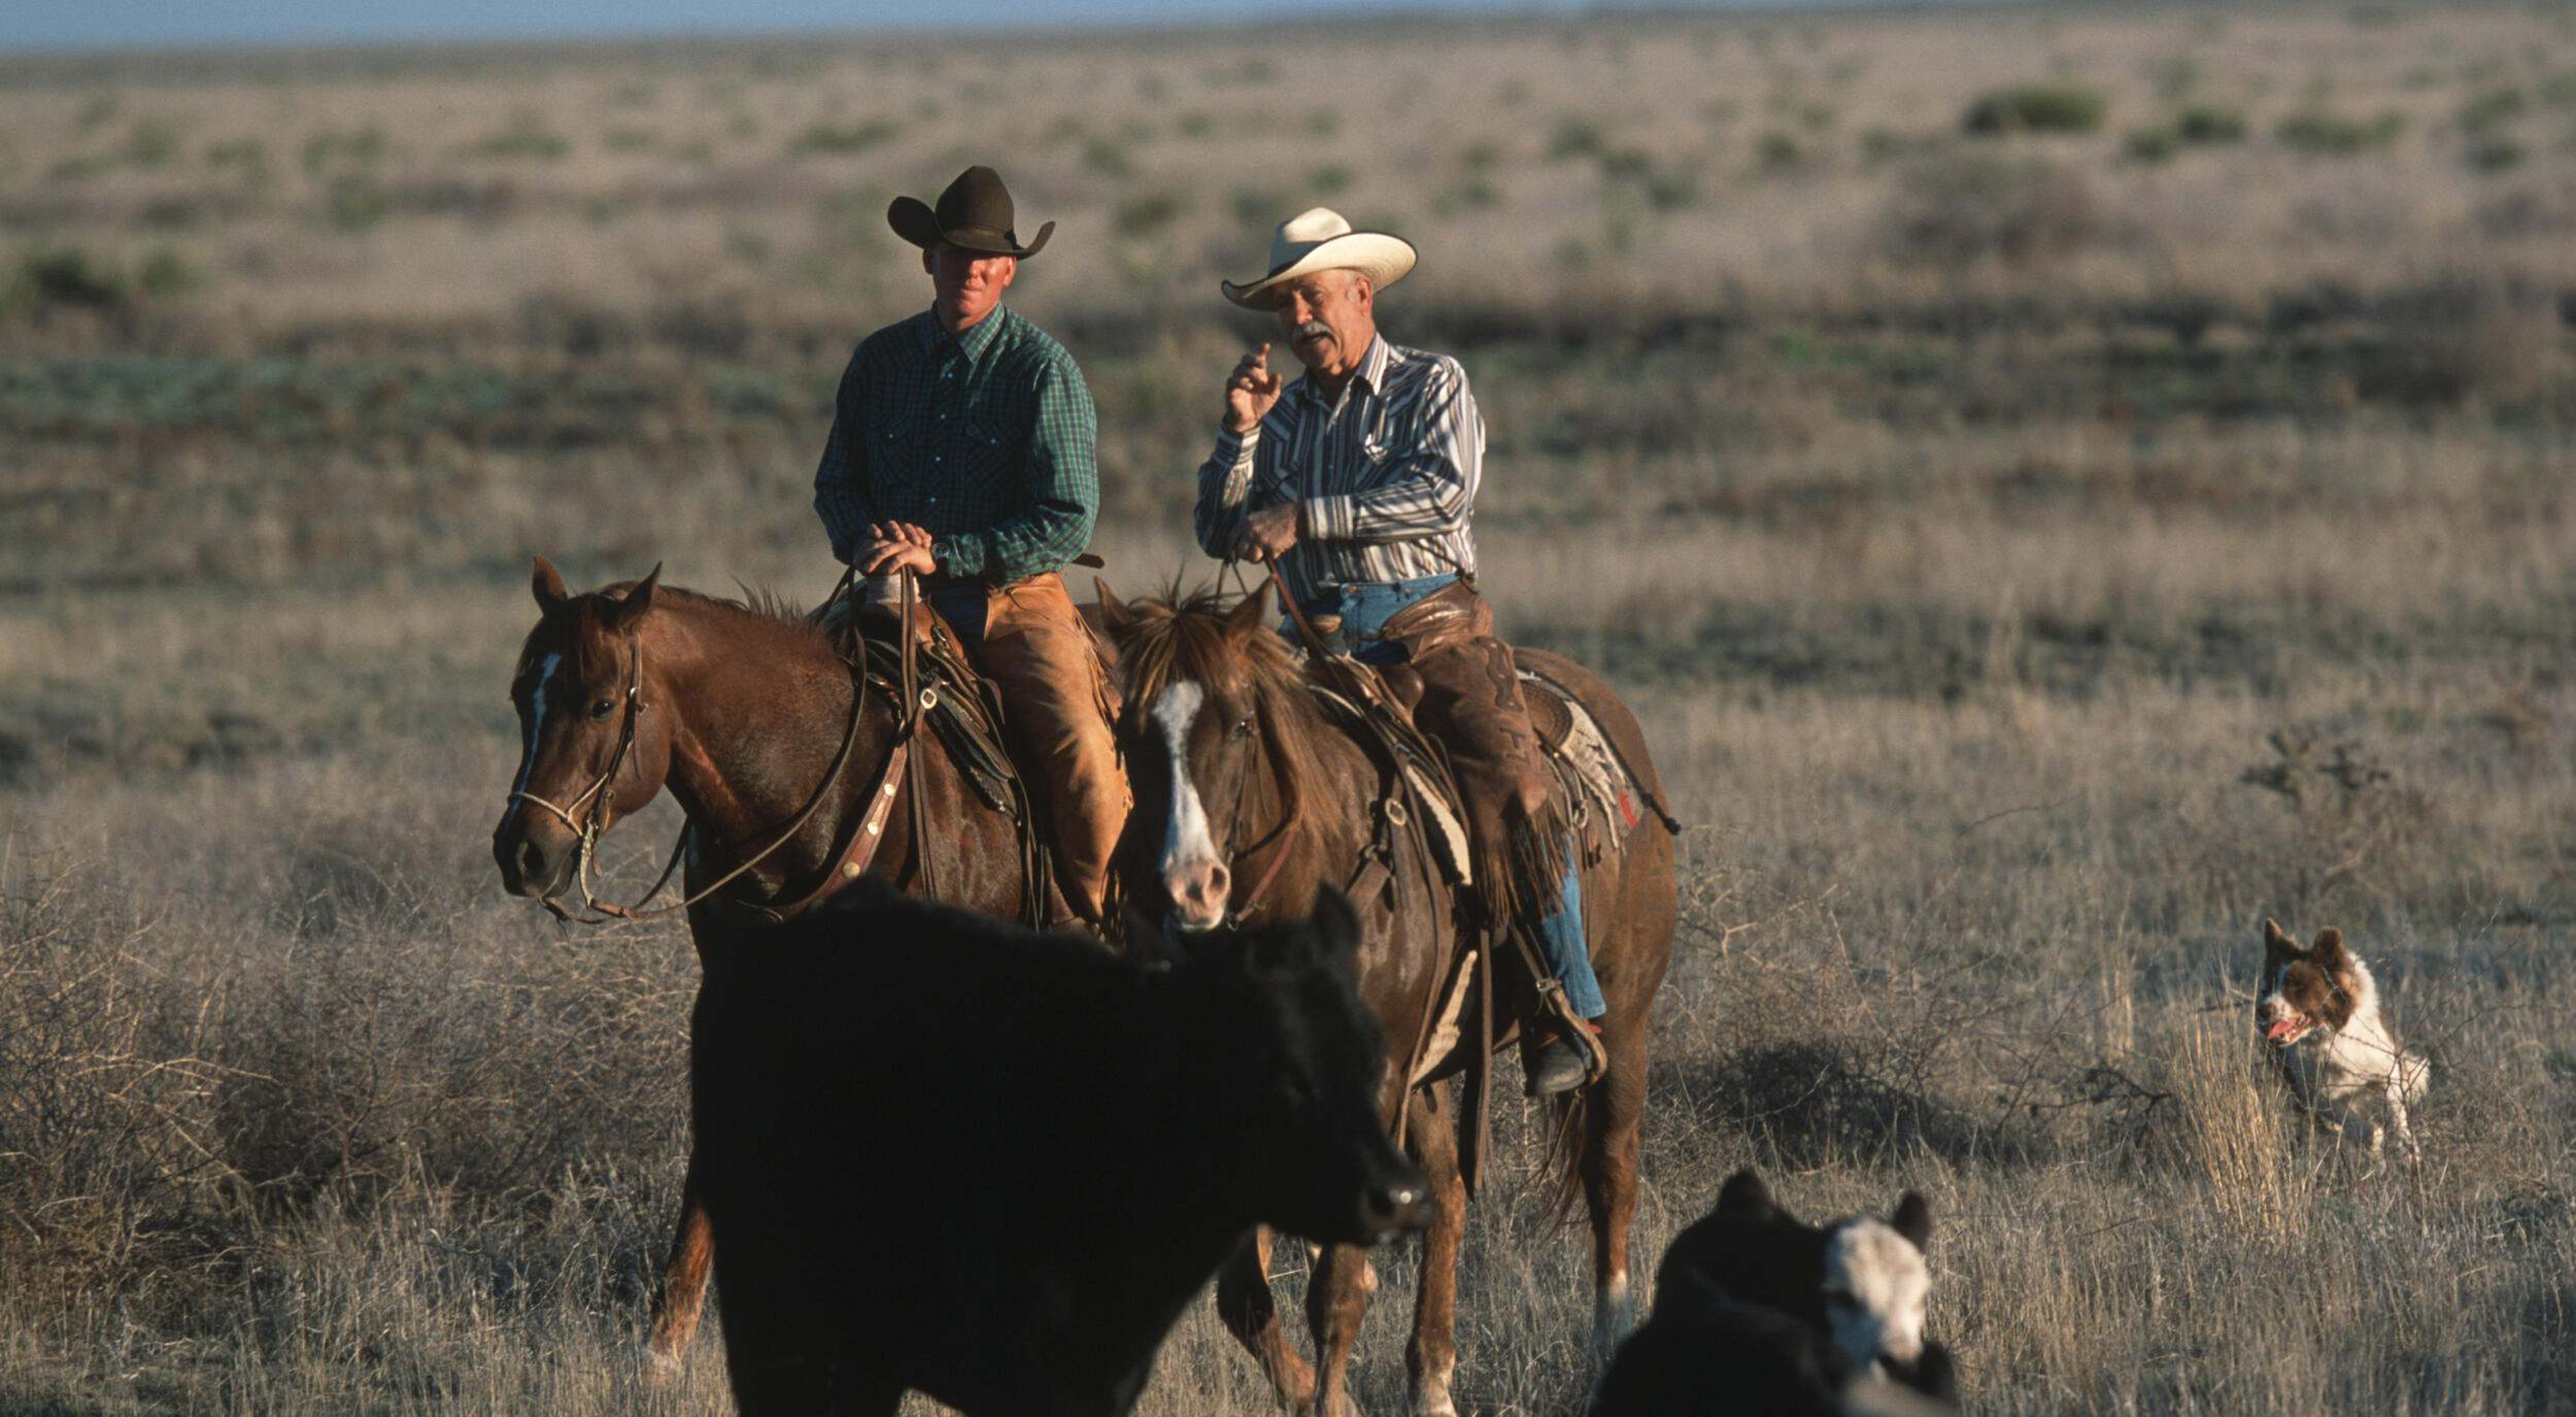 Two men in cowboy hats ride horses in a field.